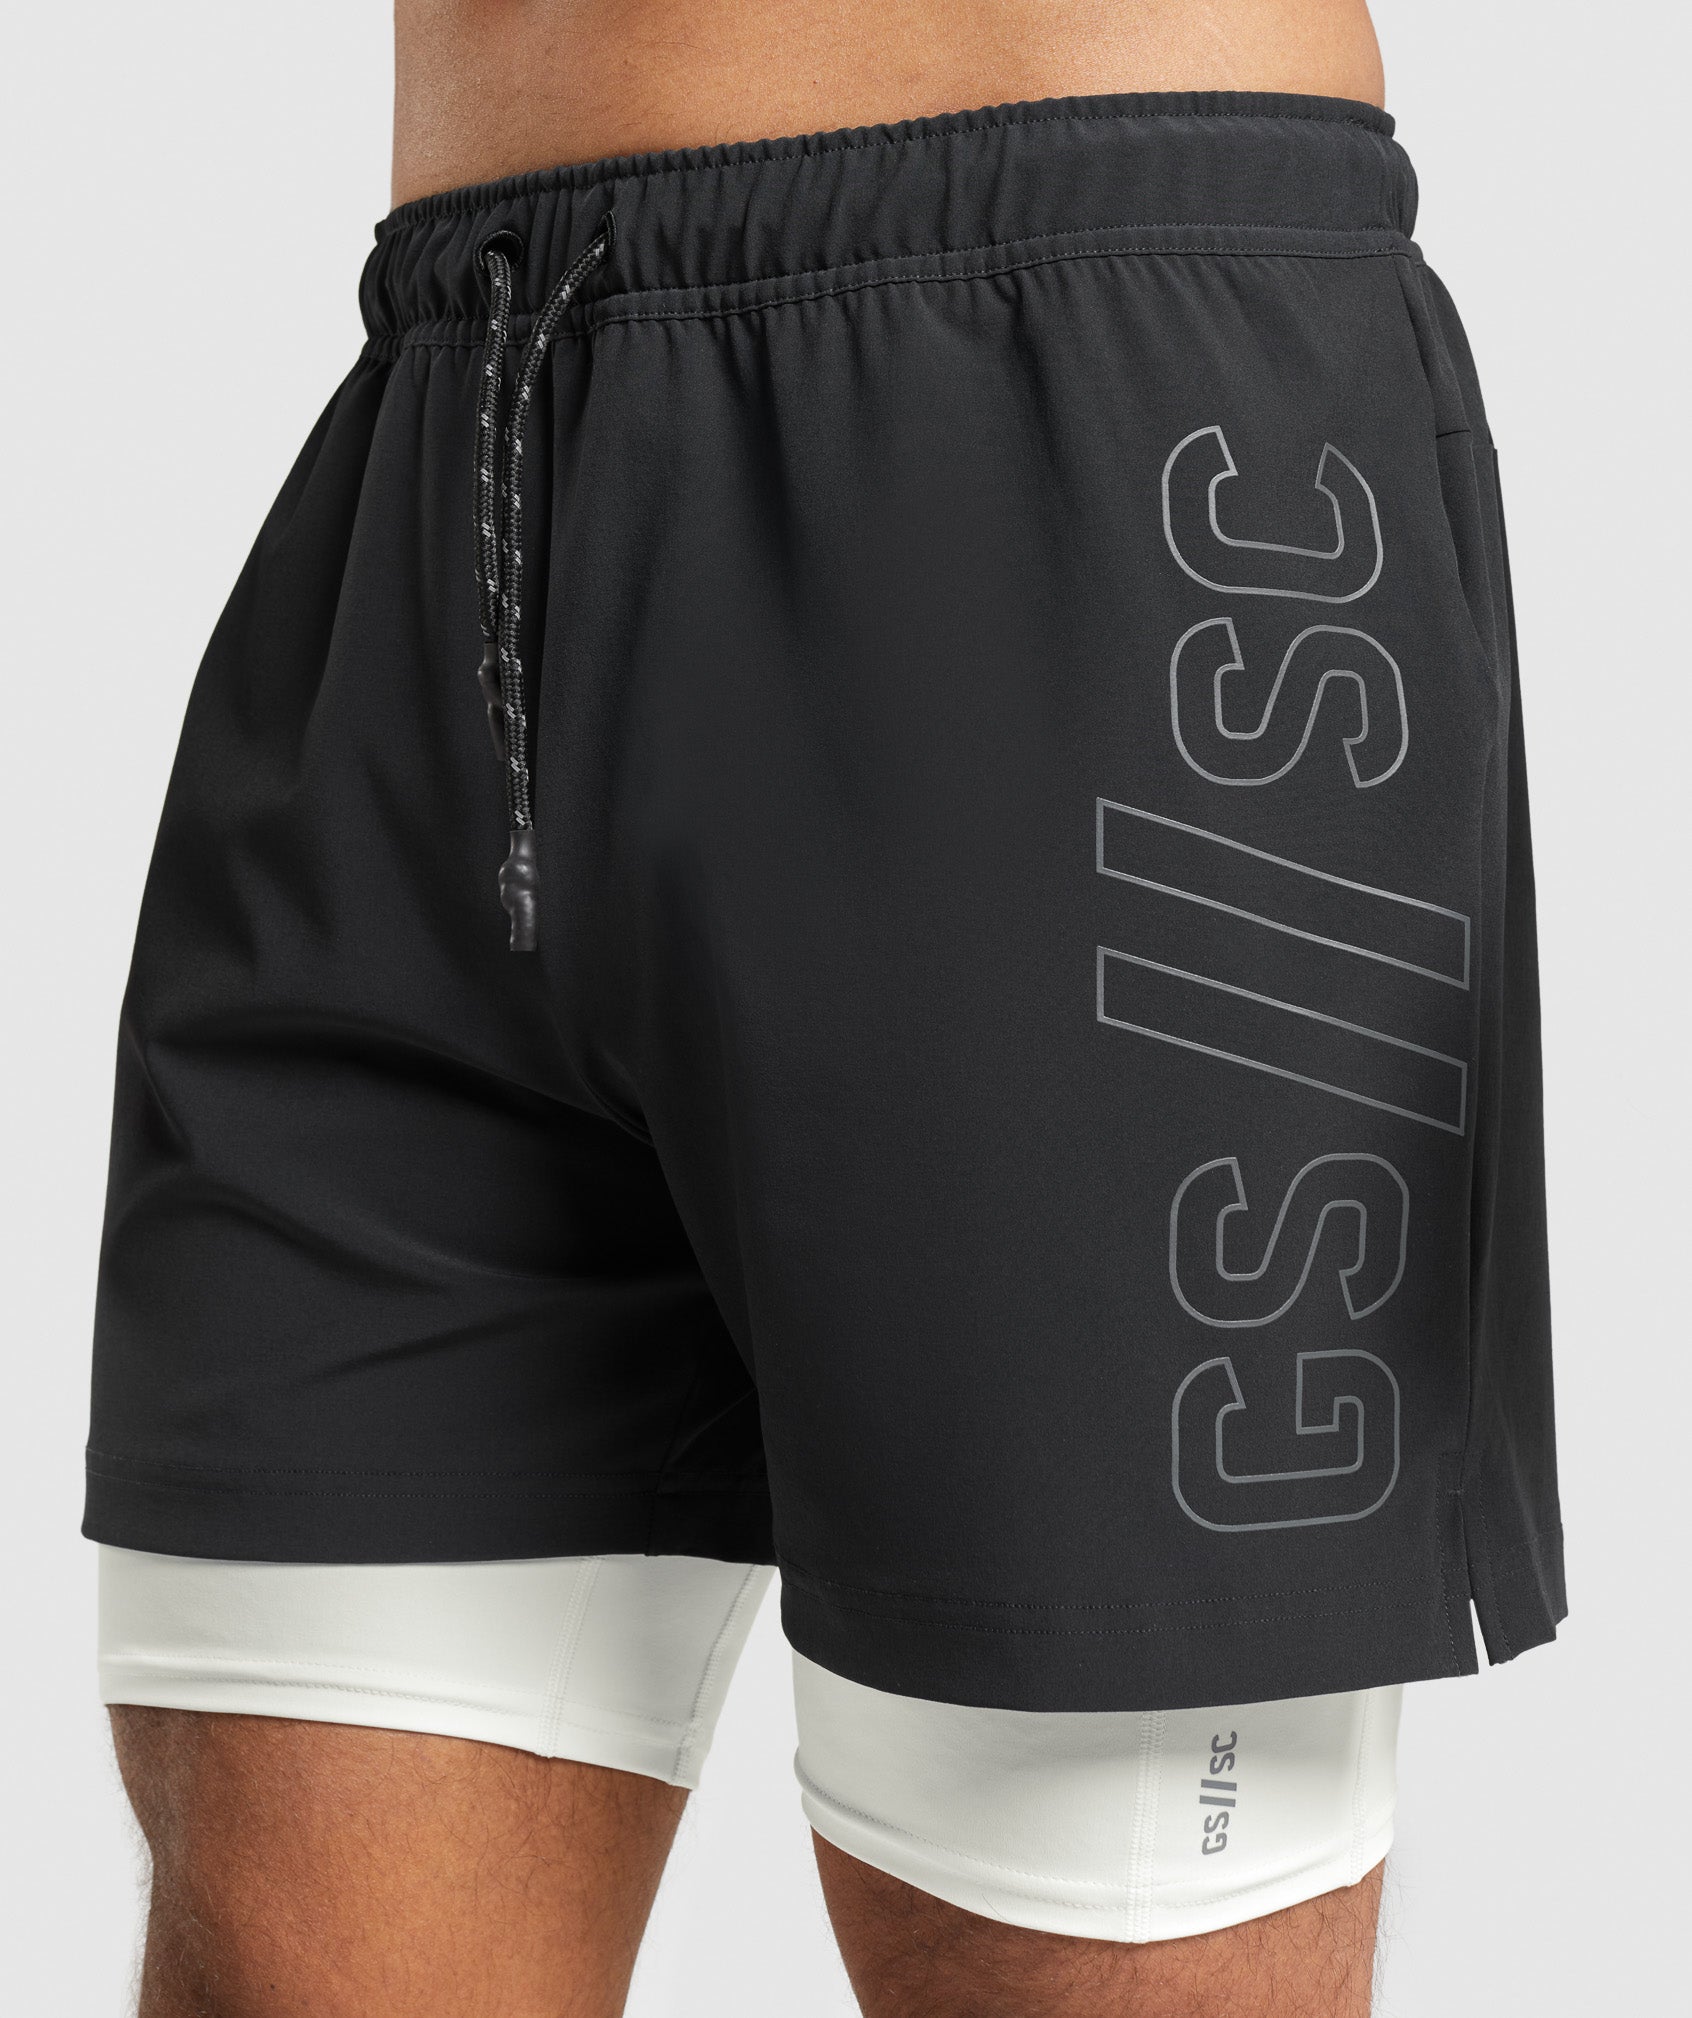 Gymshark//Steve Cook Mesh Shorts